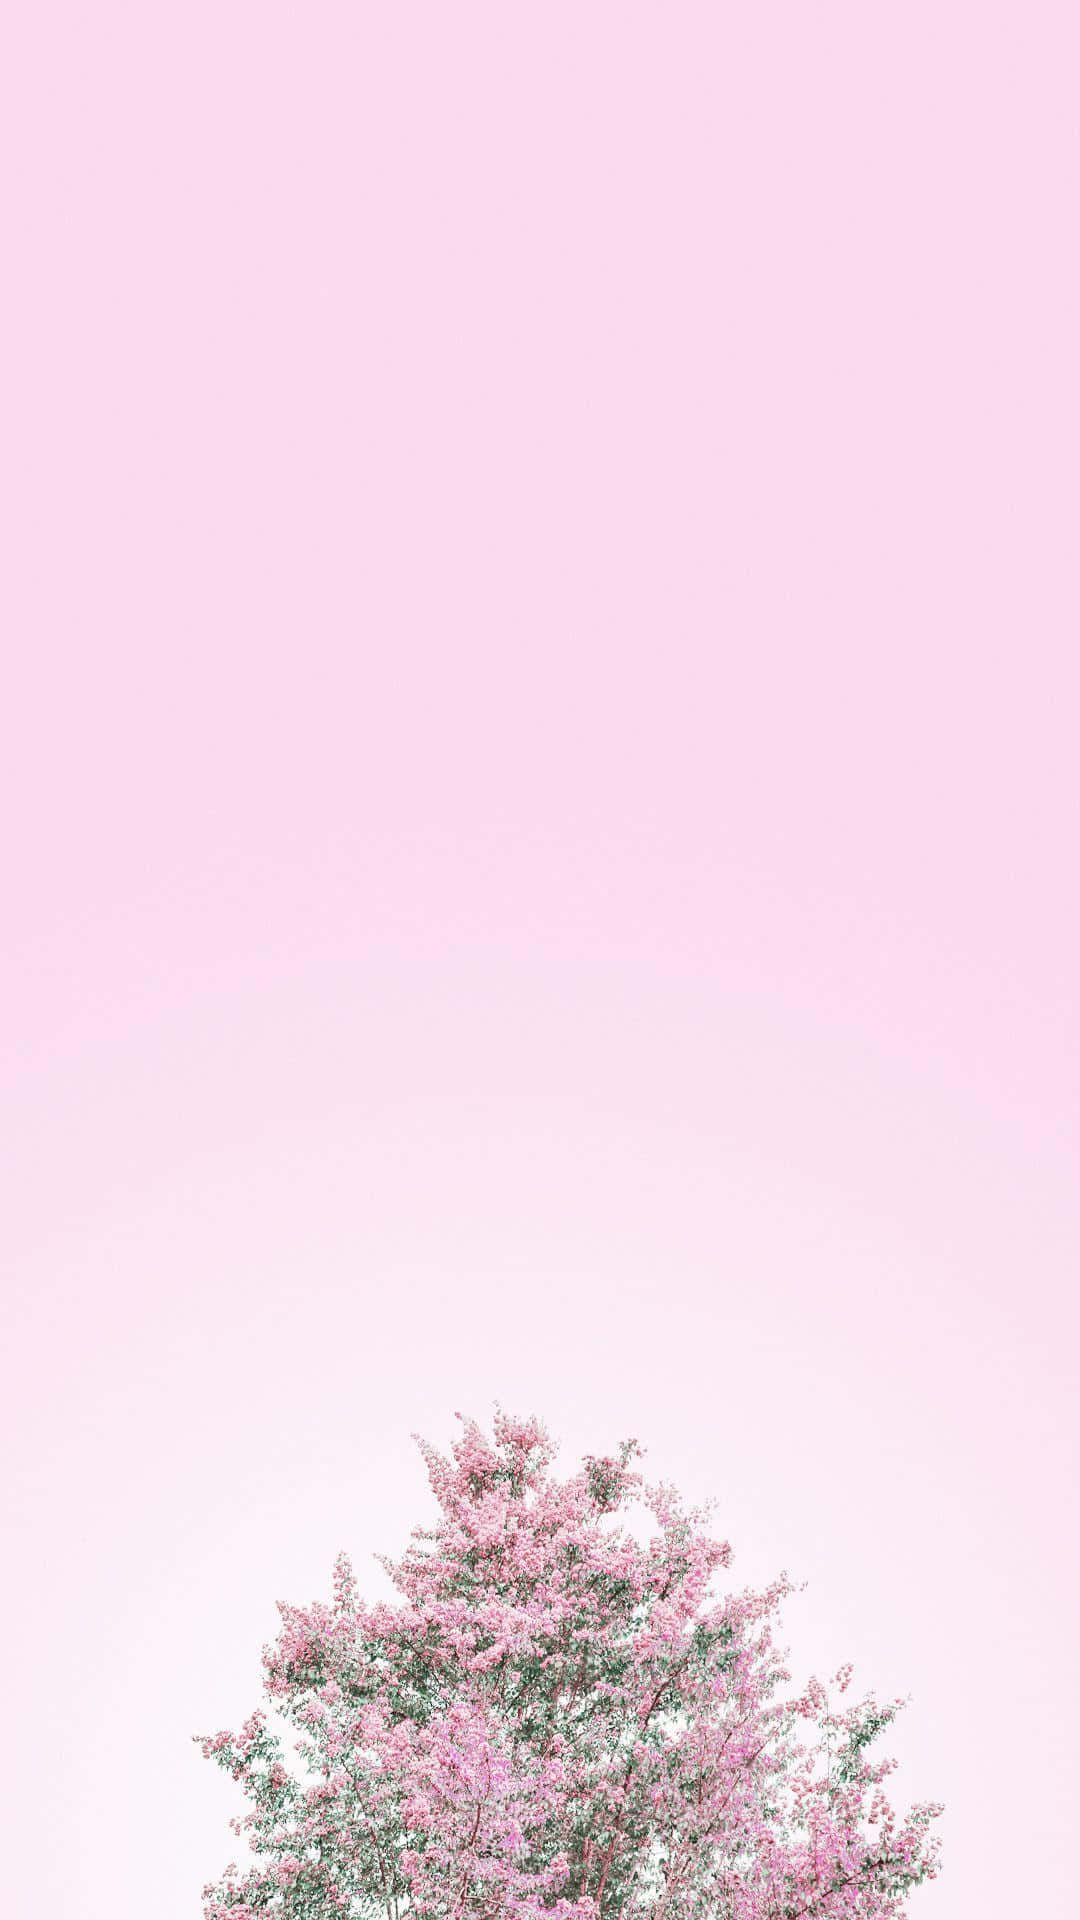 Einwunderschöner Hintergrund In Den Farben Rosa Und Weiß Wallpaper